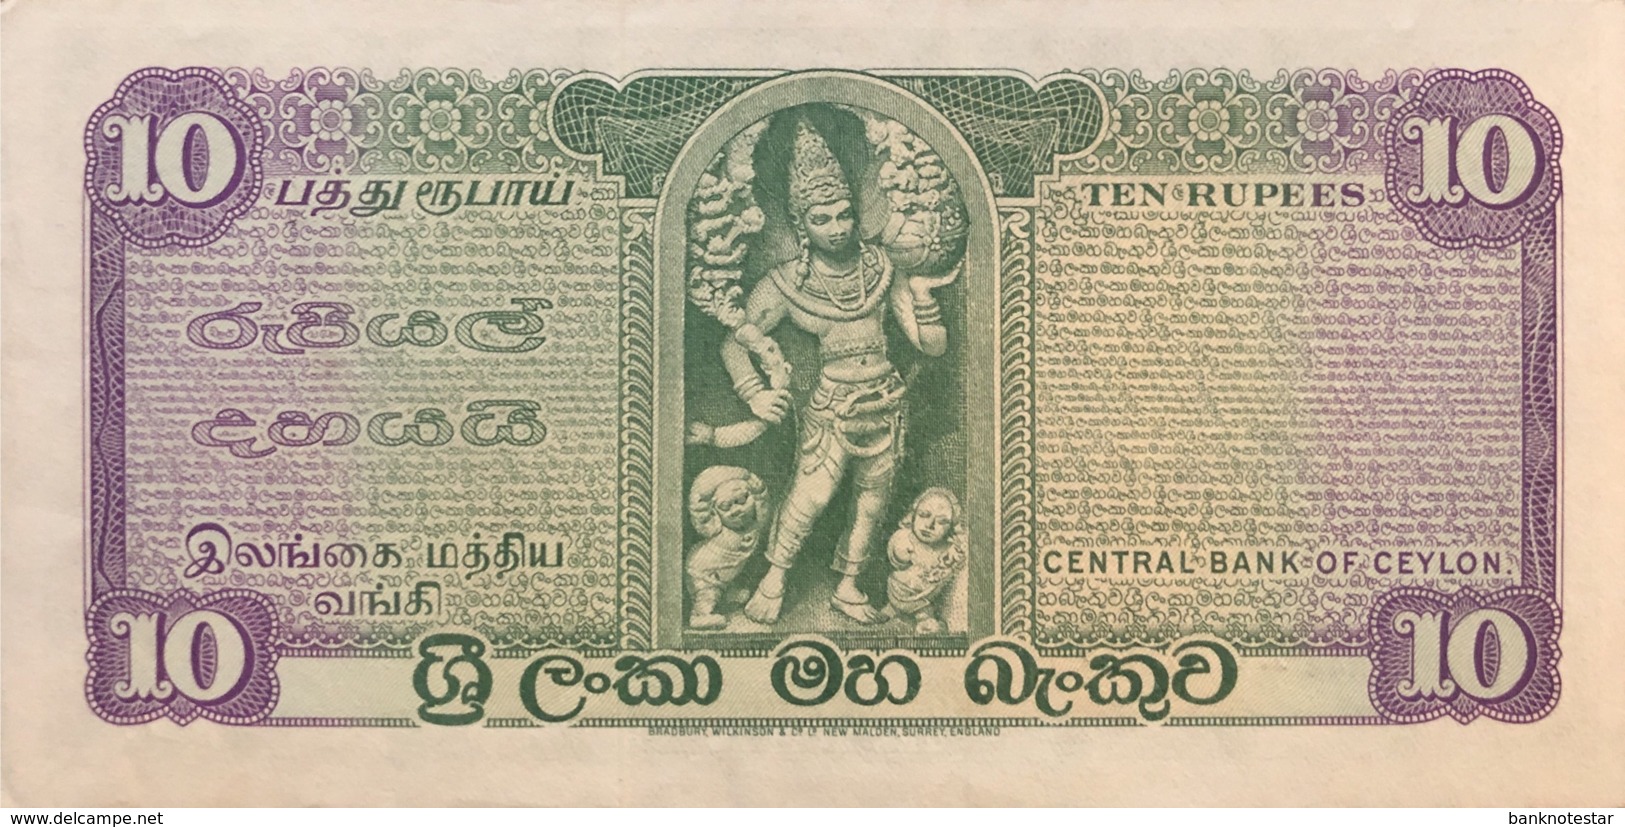 Sri Lanka 10 Rupees, P-74Ab (6.10.1975) - UNC - Sri Lanka